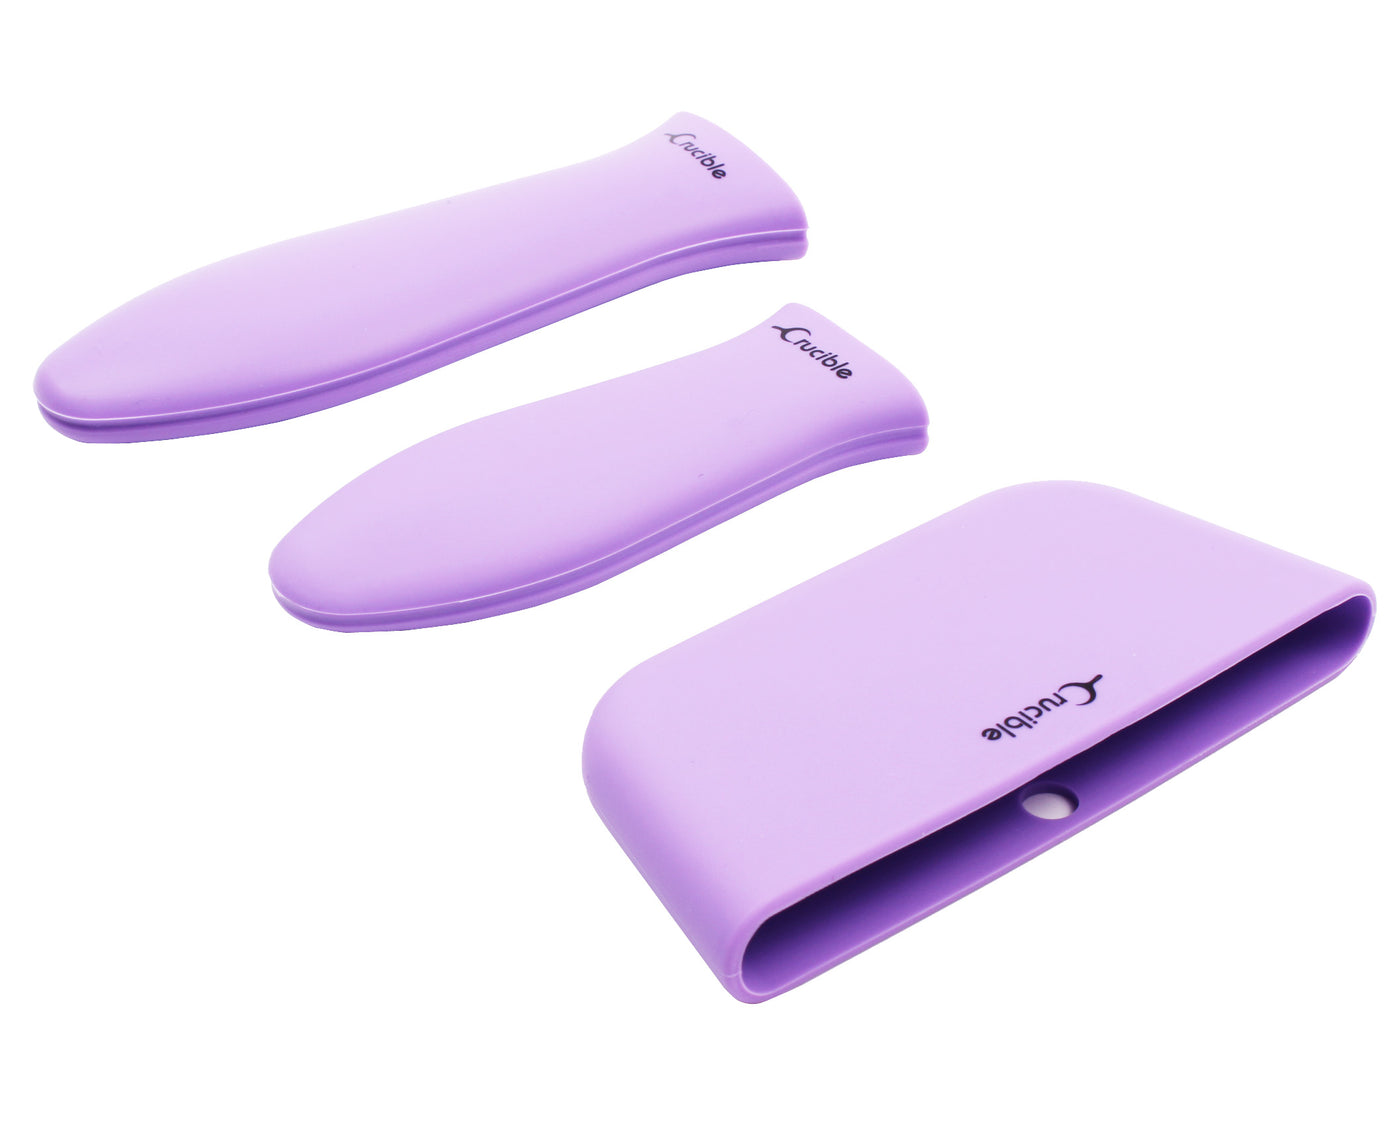 硅胶热手柄支架、隔热垫（3 件装混合紫色）、套筒握把、手柄套